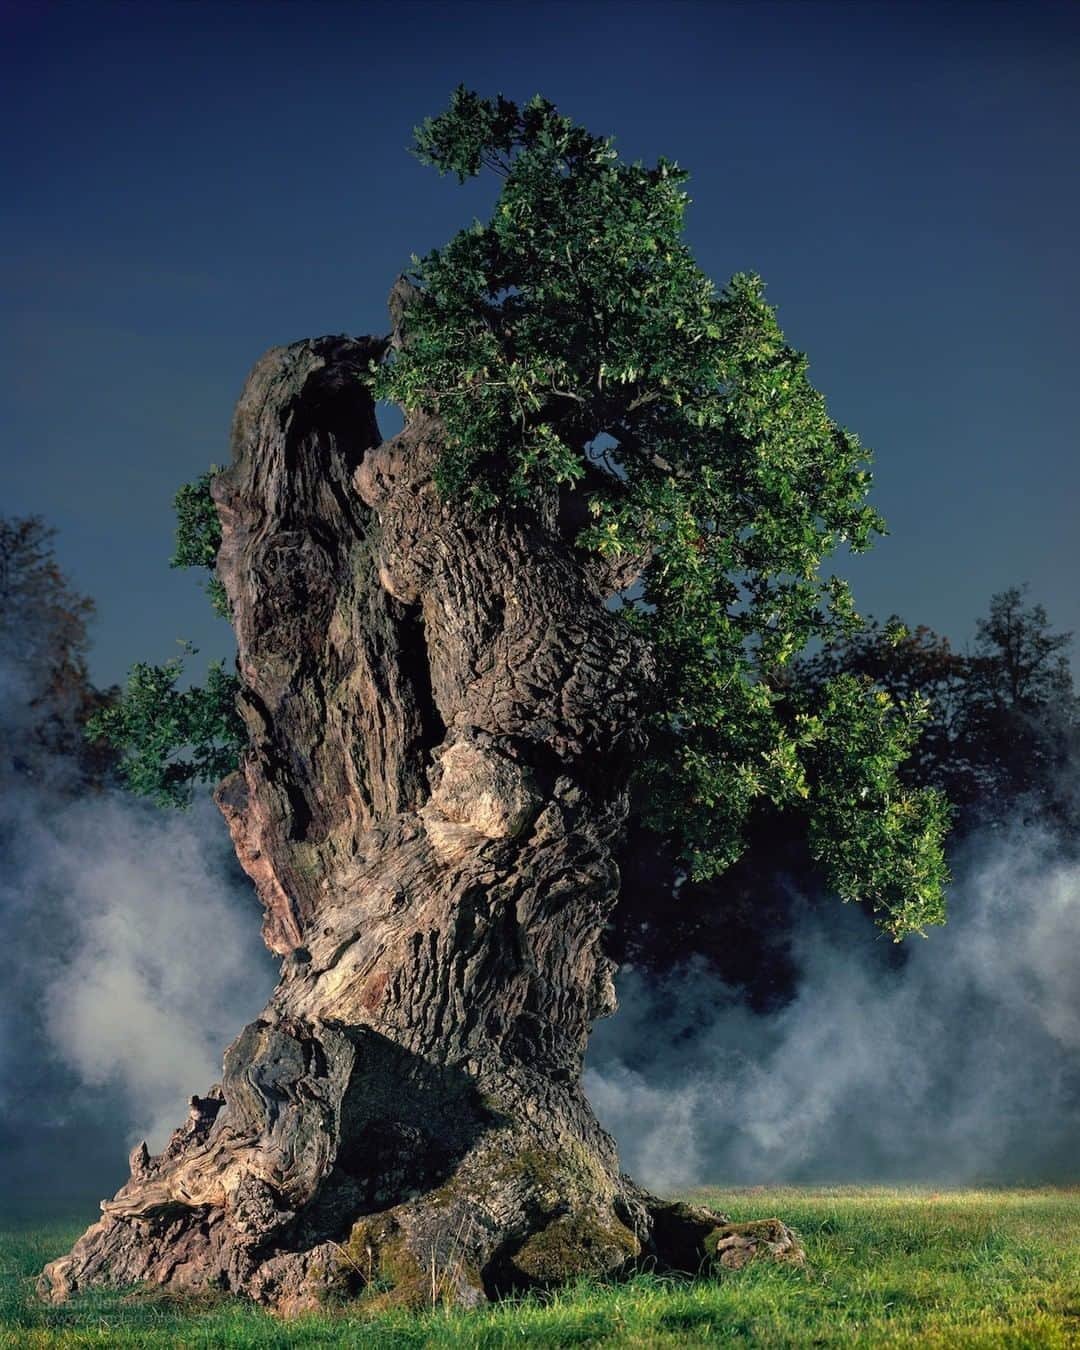 Это был огромный дуб. Дуб парк Фредвилл, Нонингтон, Великобритания. Старое дерево. Древние деревья. Огромный дуб.